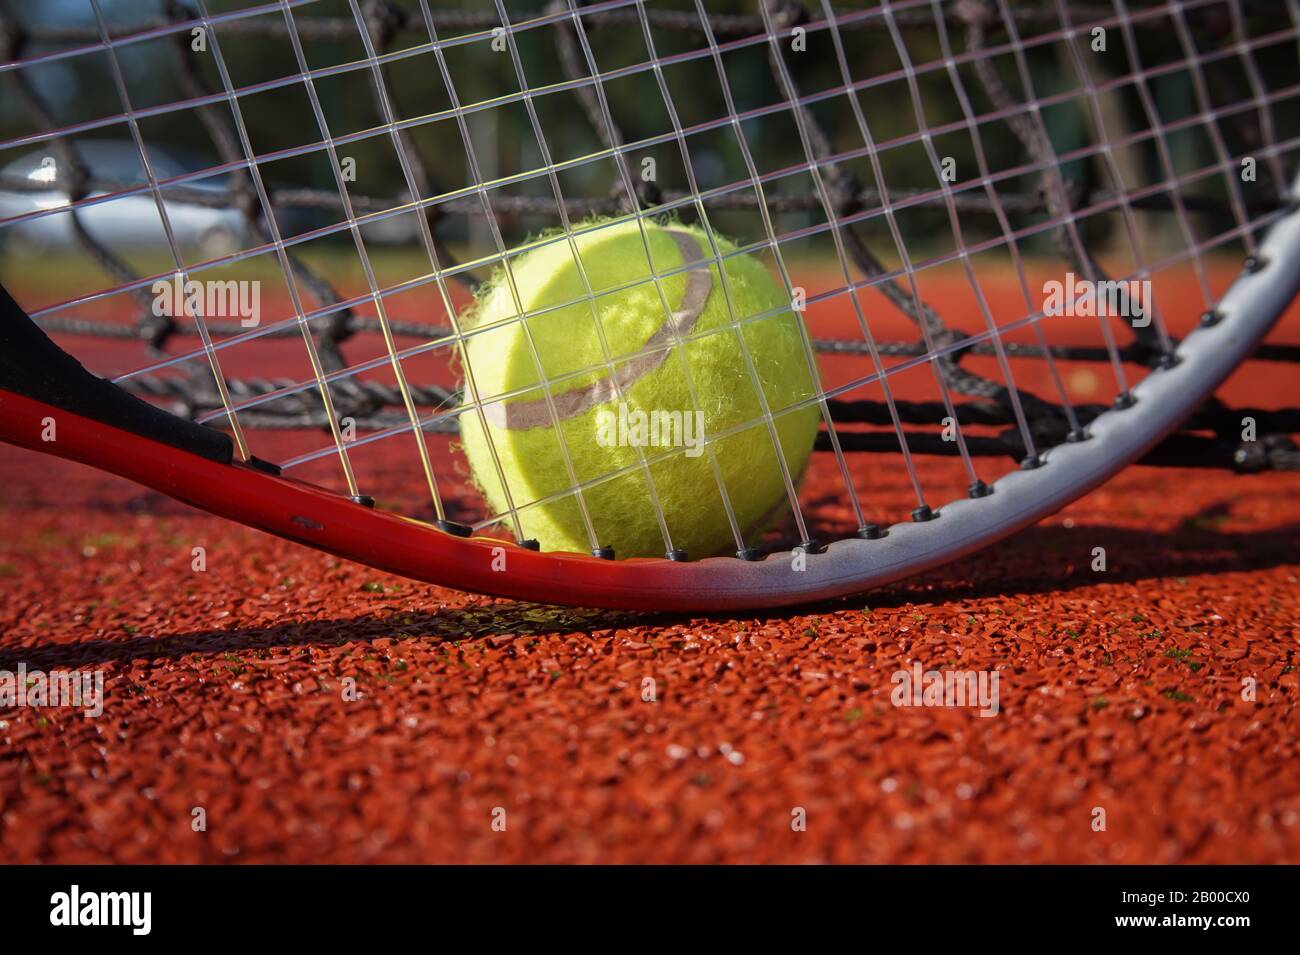 Balle de Tennis, raquette et de ligne sur une cour extérieure avec la raquette standing on end jette une ombre sur la surface de tous les temps Banque D'Images